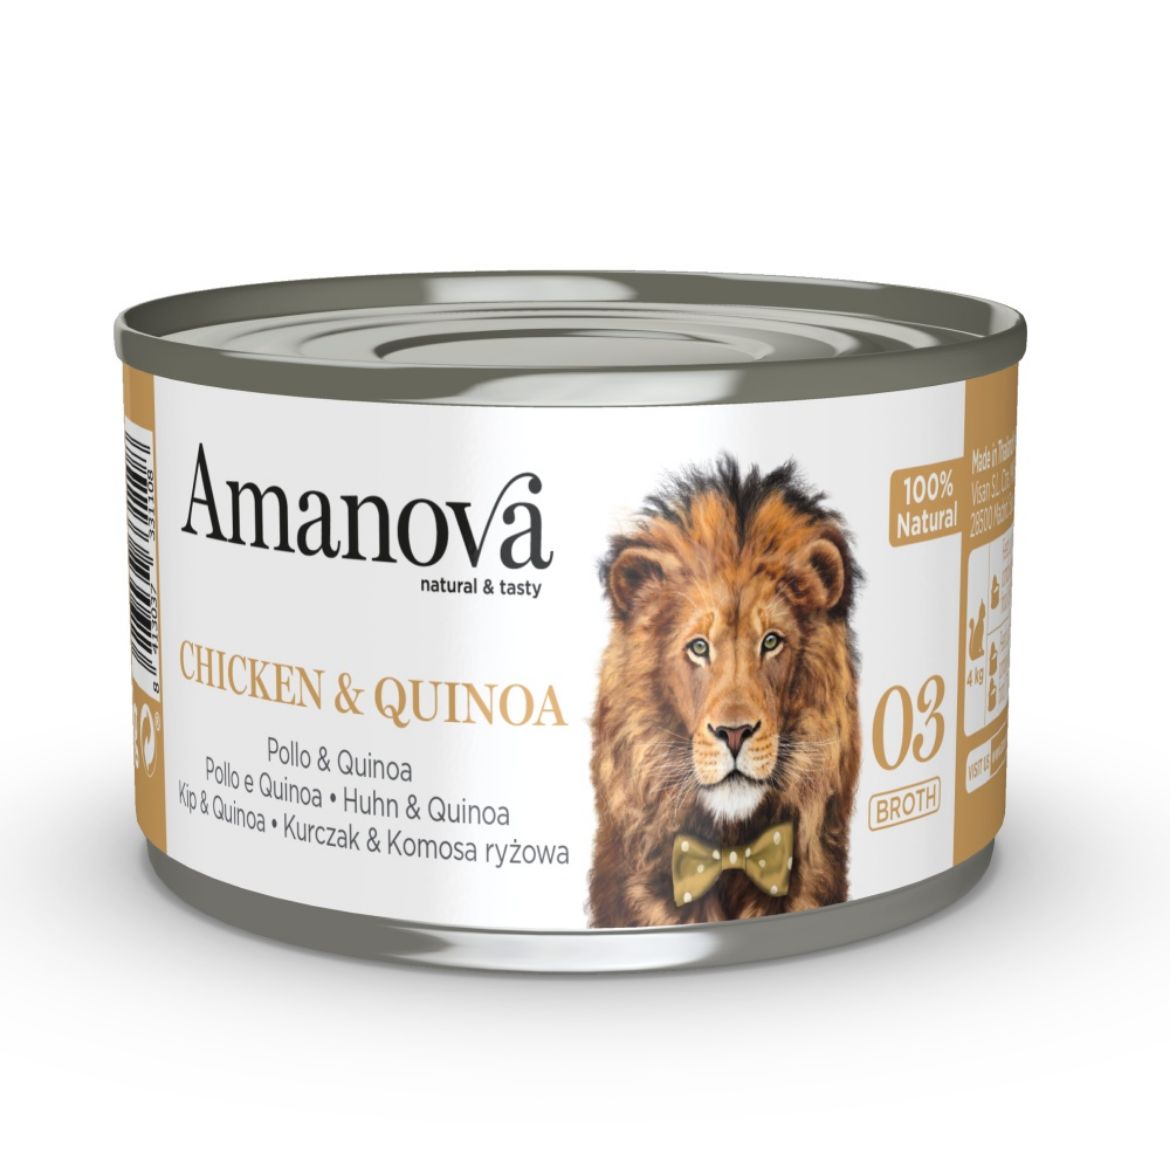 Obrázek z Amanova Cat Chicken & Quinoa ve vývaru (03), konzerva 70 g  